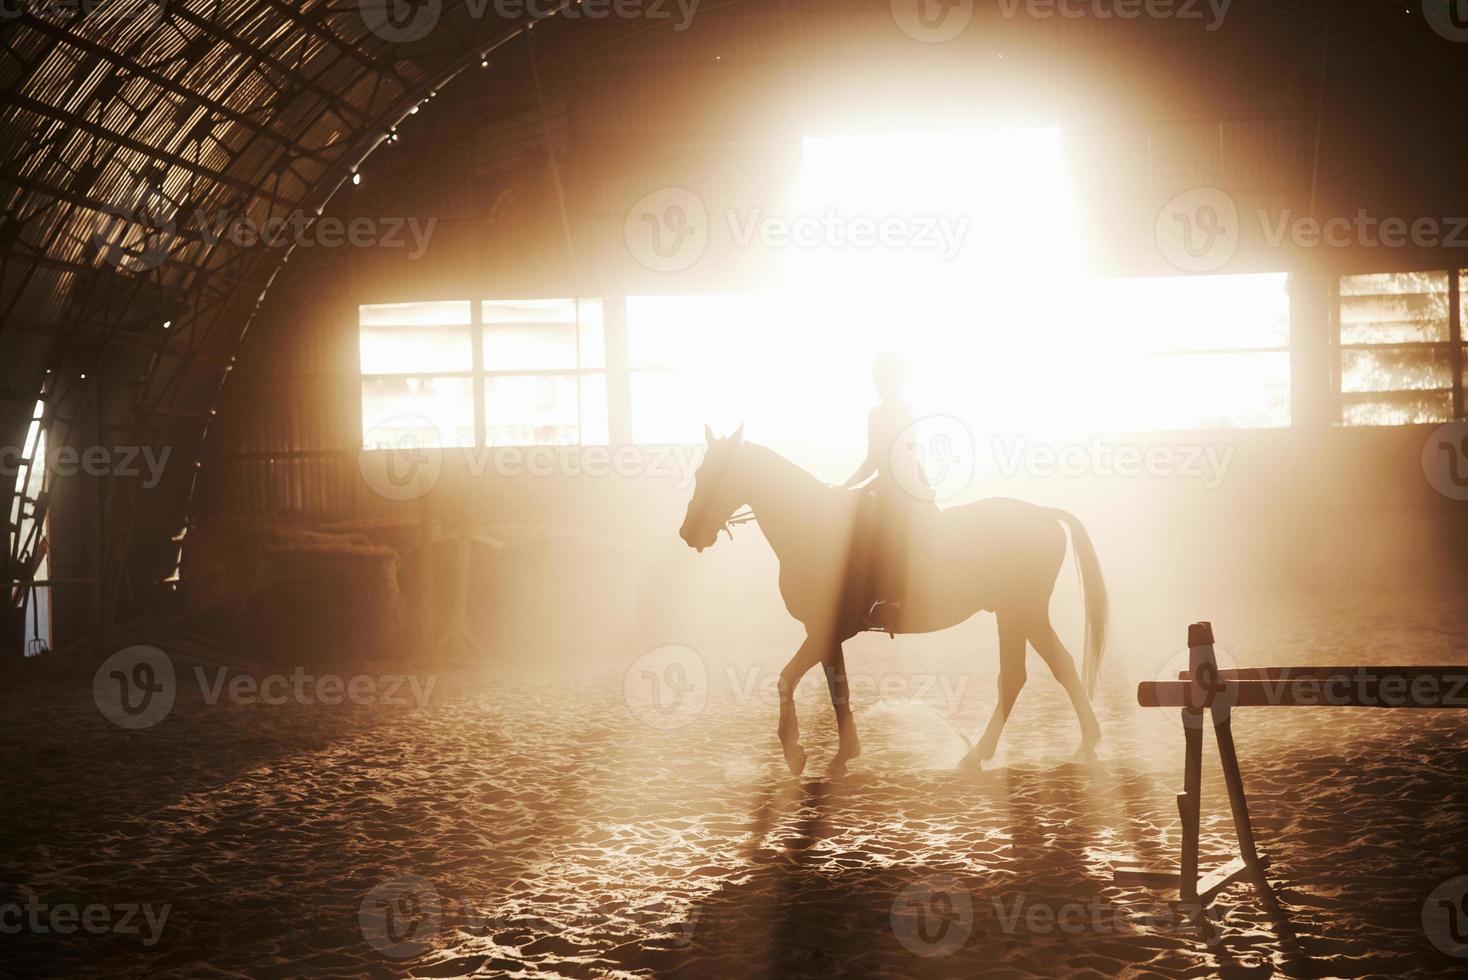 majestuosa imagen de caballo caballo silueta con jinete sobre fondo puesta de sol. la chica jockey a lomos de un semental cabalga en un hangar en una granja y salta por encima del travesaño. el concepto de montar a caballo foto